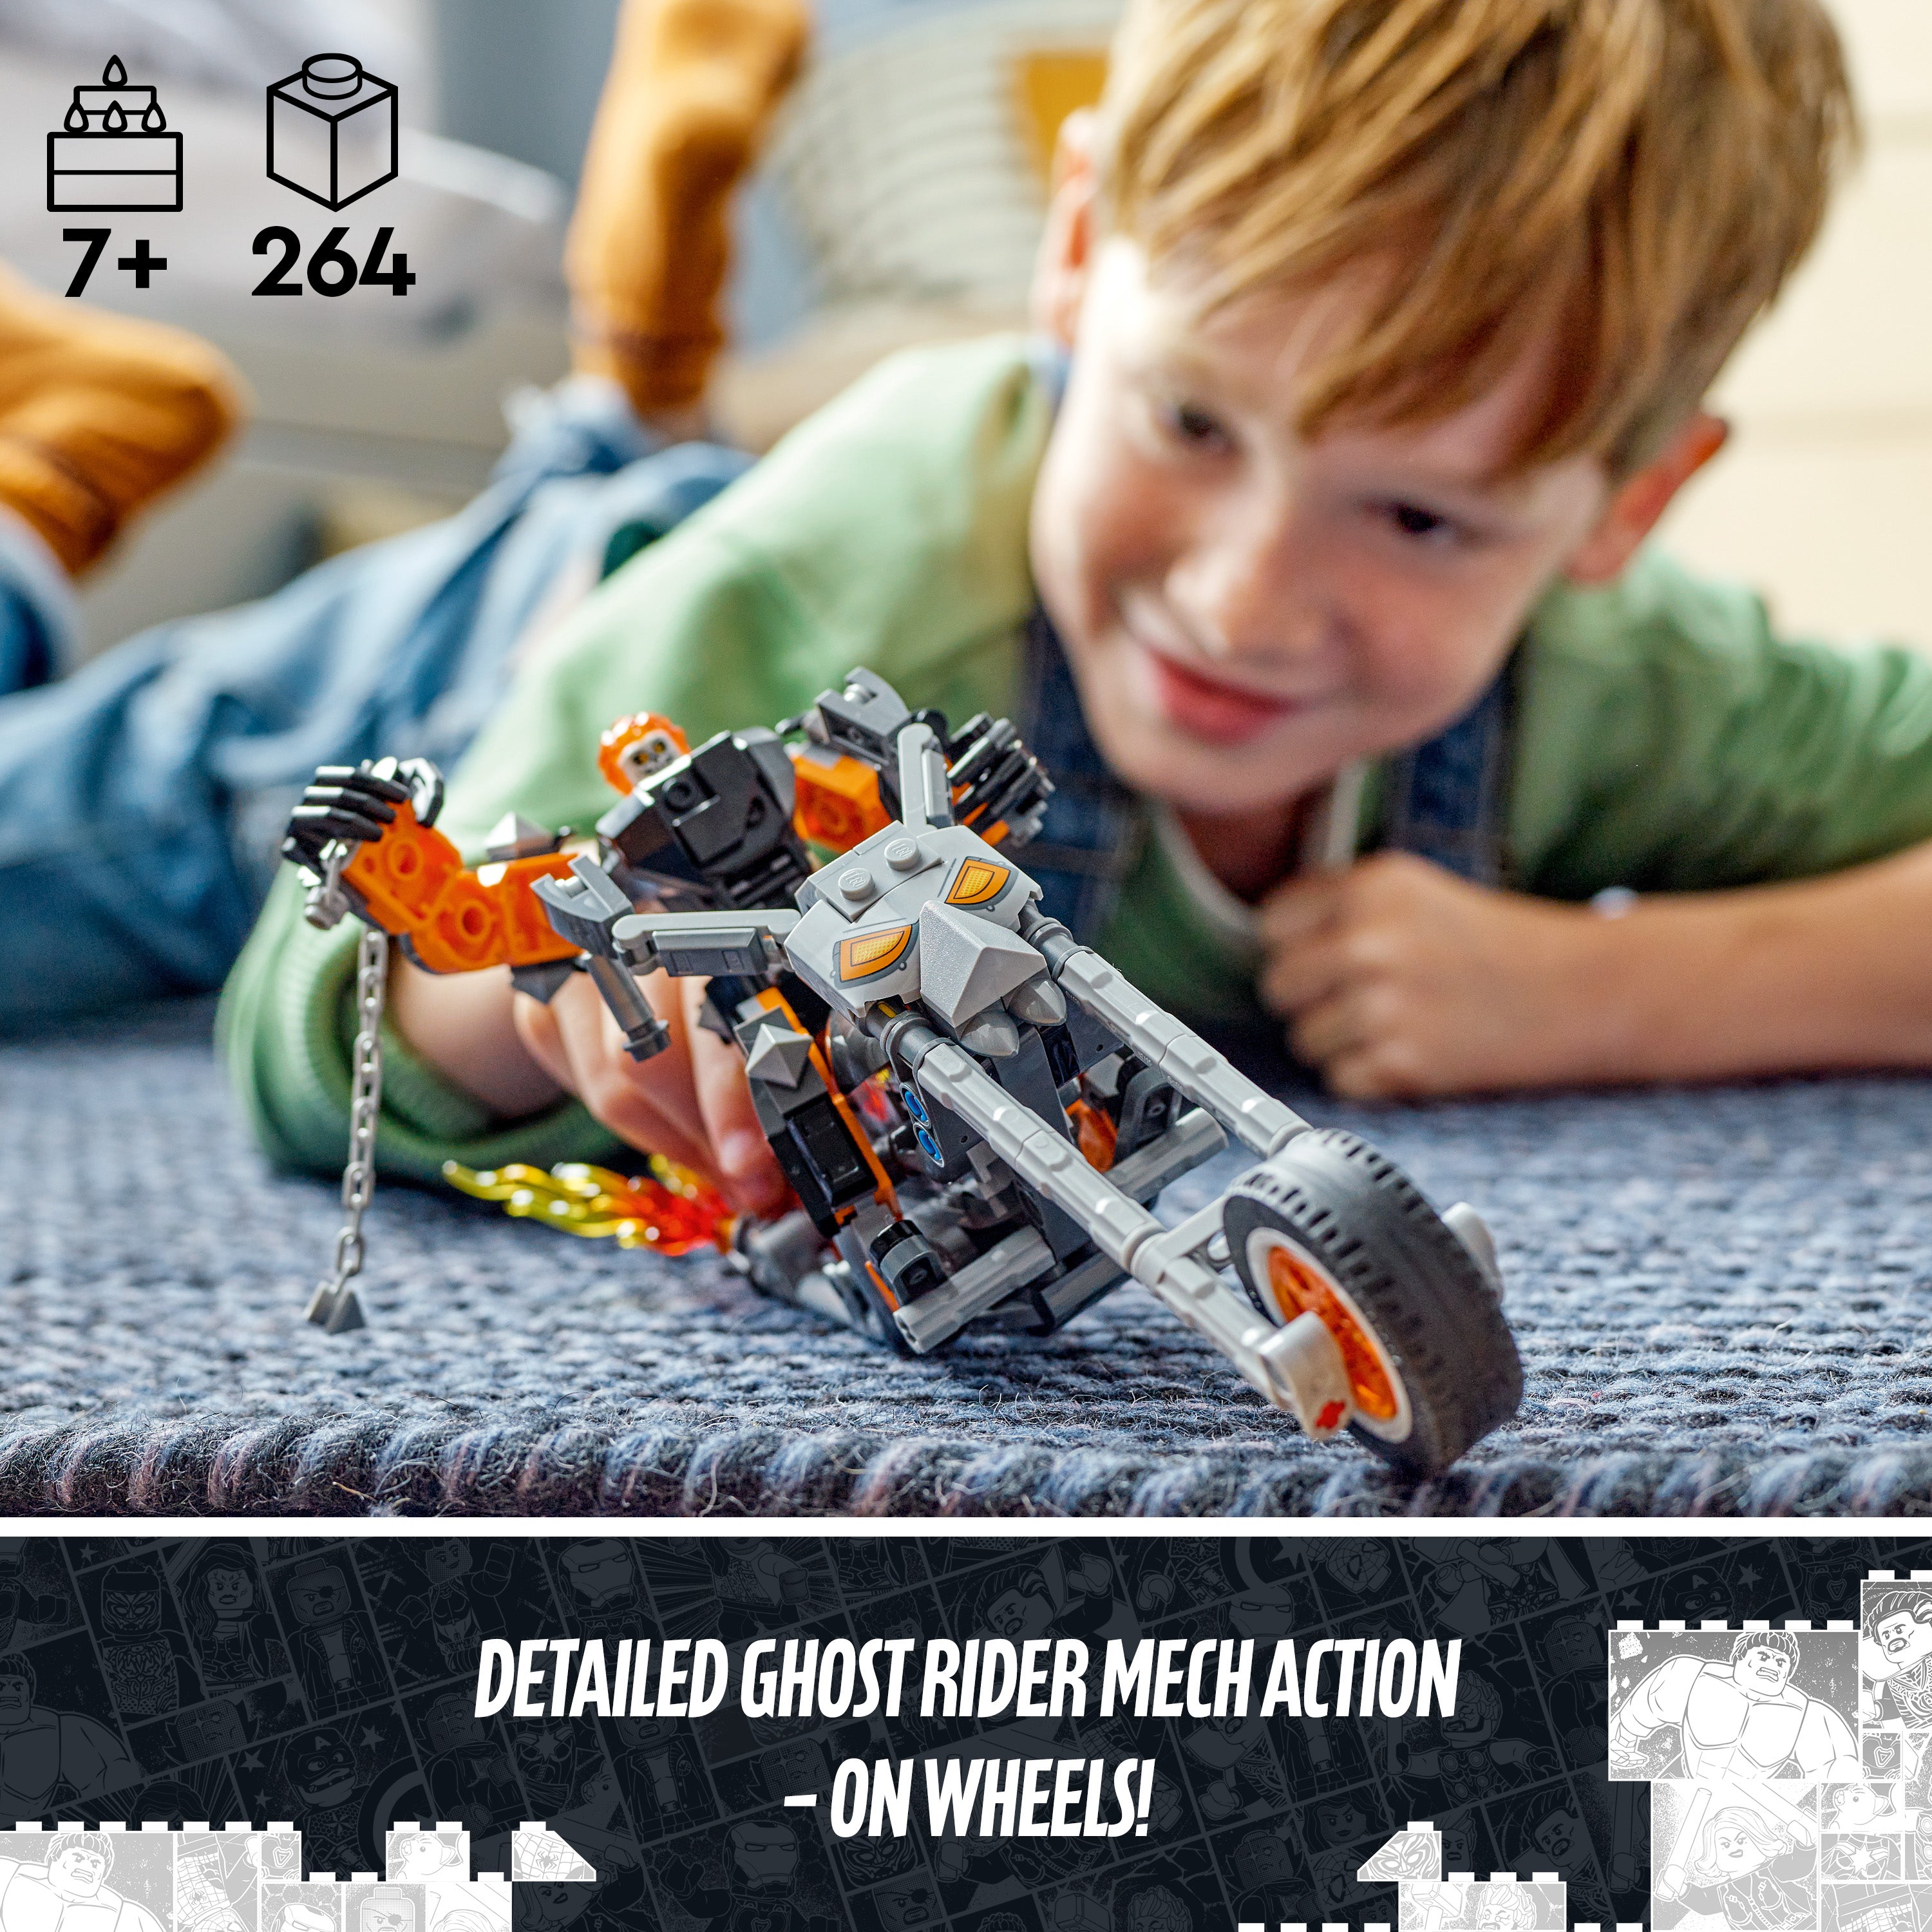 Lego 76245 Ghost Rider Mech & Bike